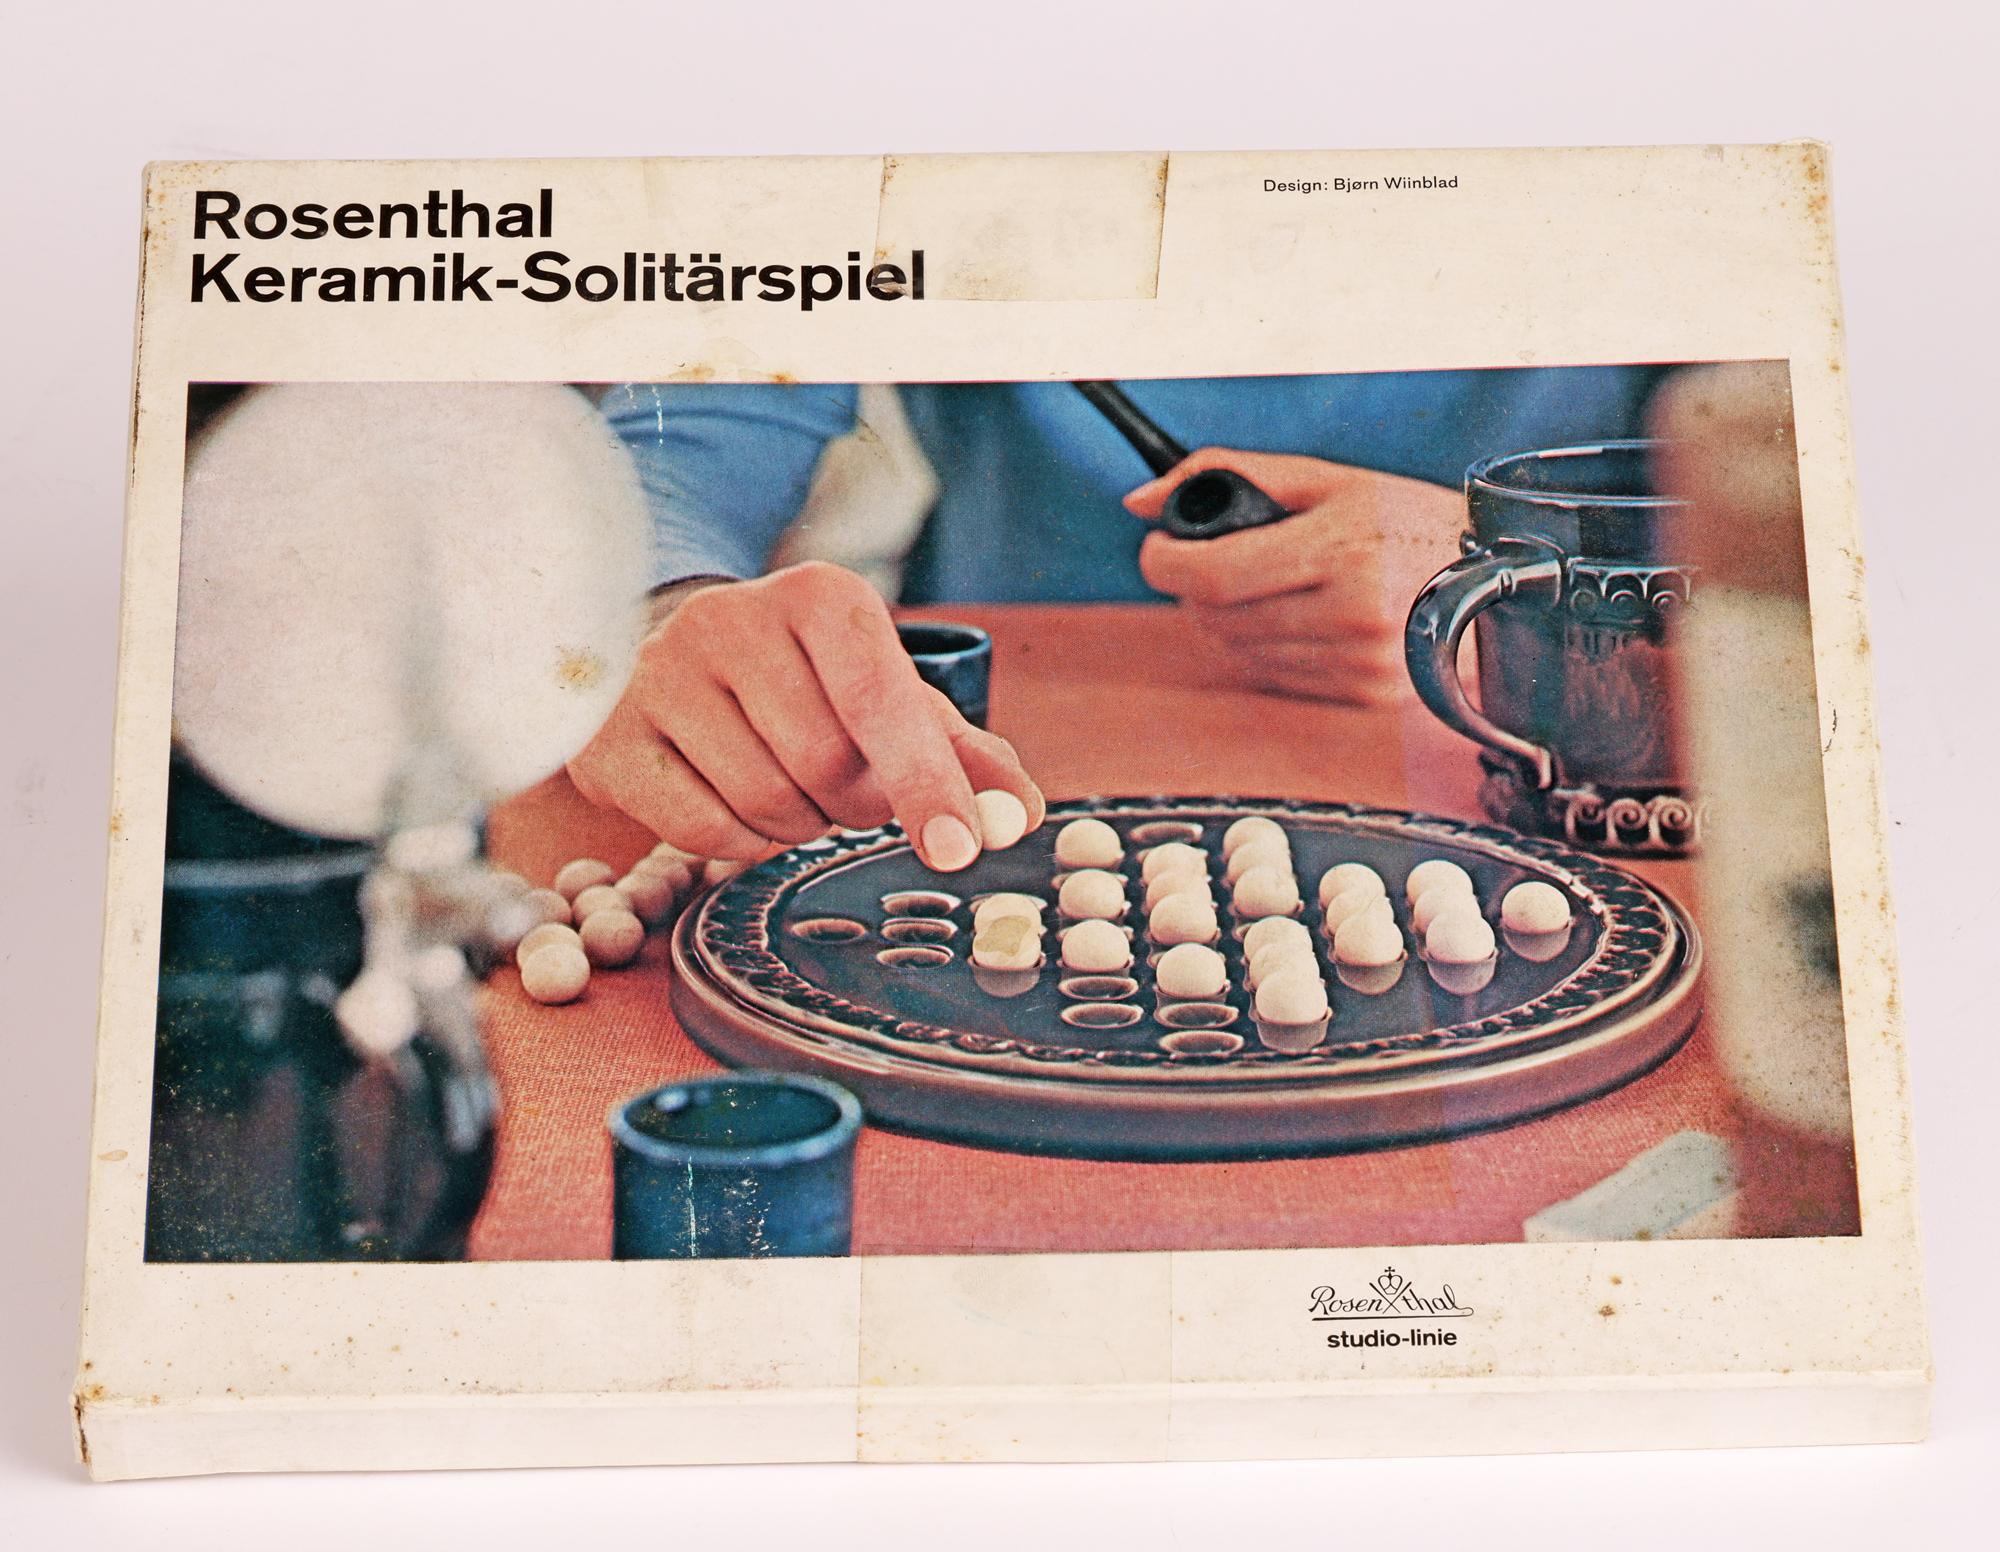 Ein stilvolles deutsches Rosenthal Studio-Linie originalverpacktes Keramik-Solitärspiel